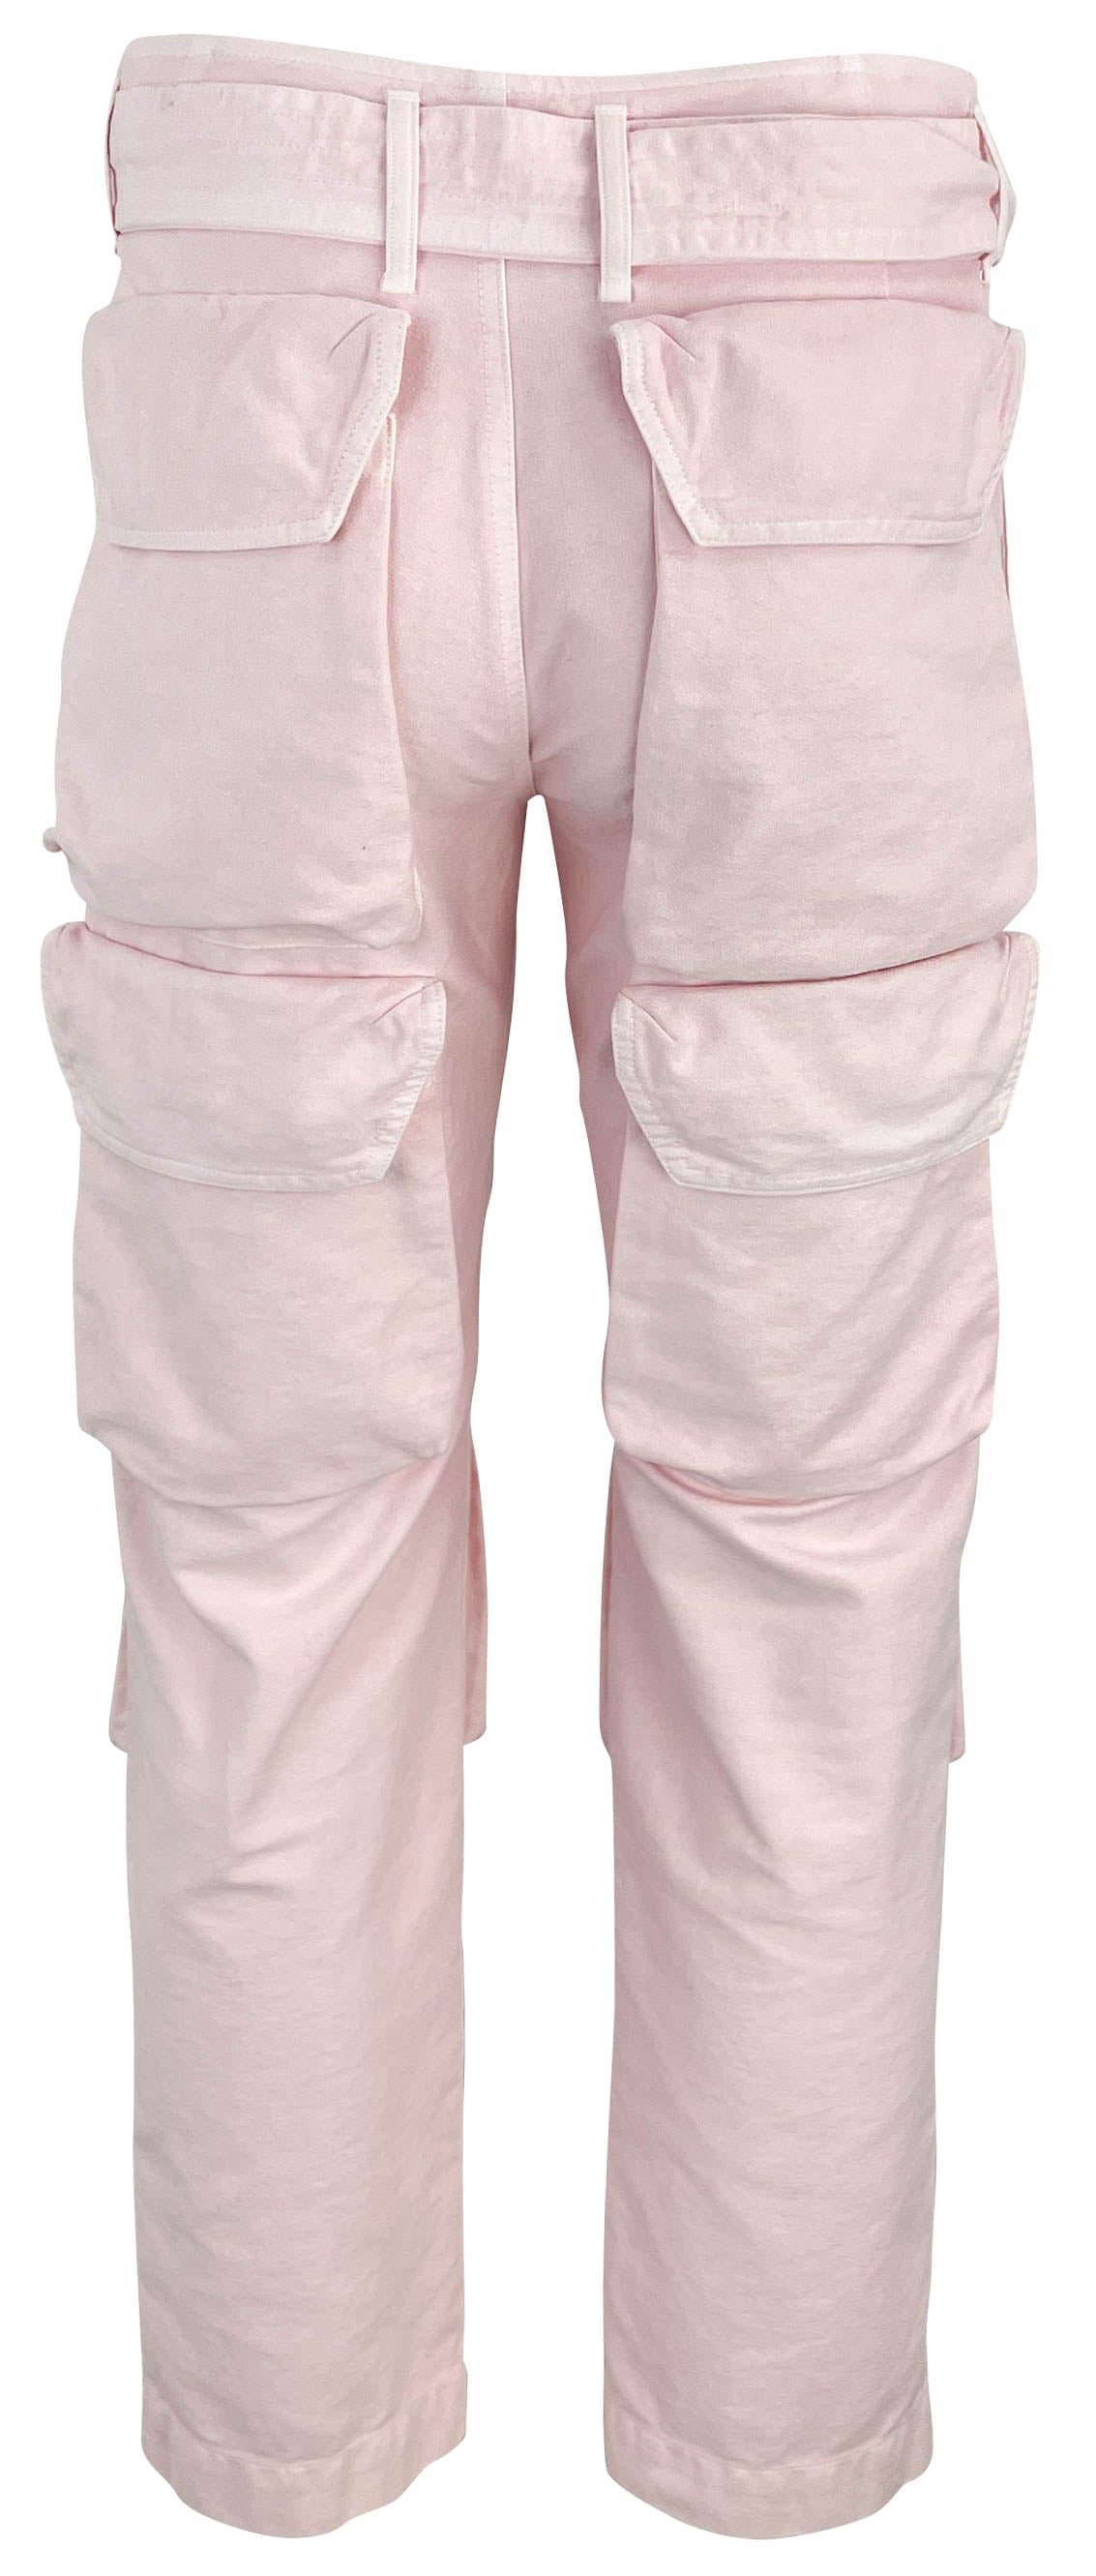 Dries Van Noten Presley Cargo Pants in Pink - Discounts on Dries Van Noten at UAL